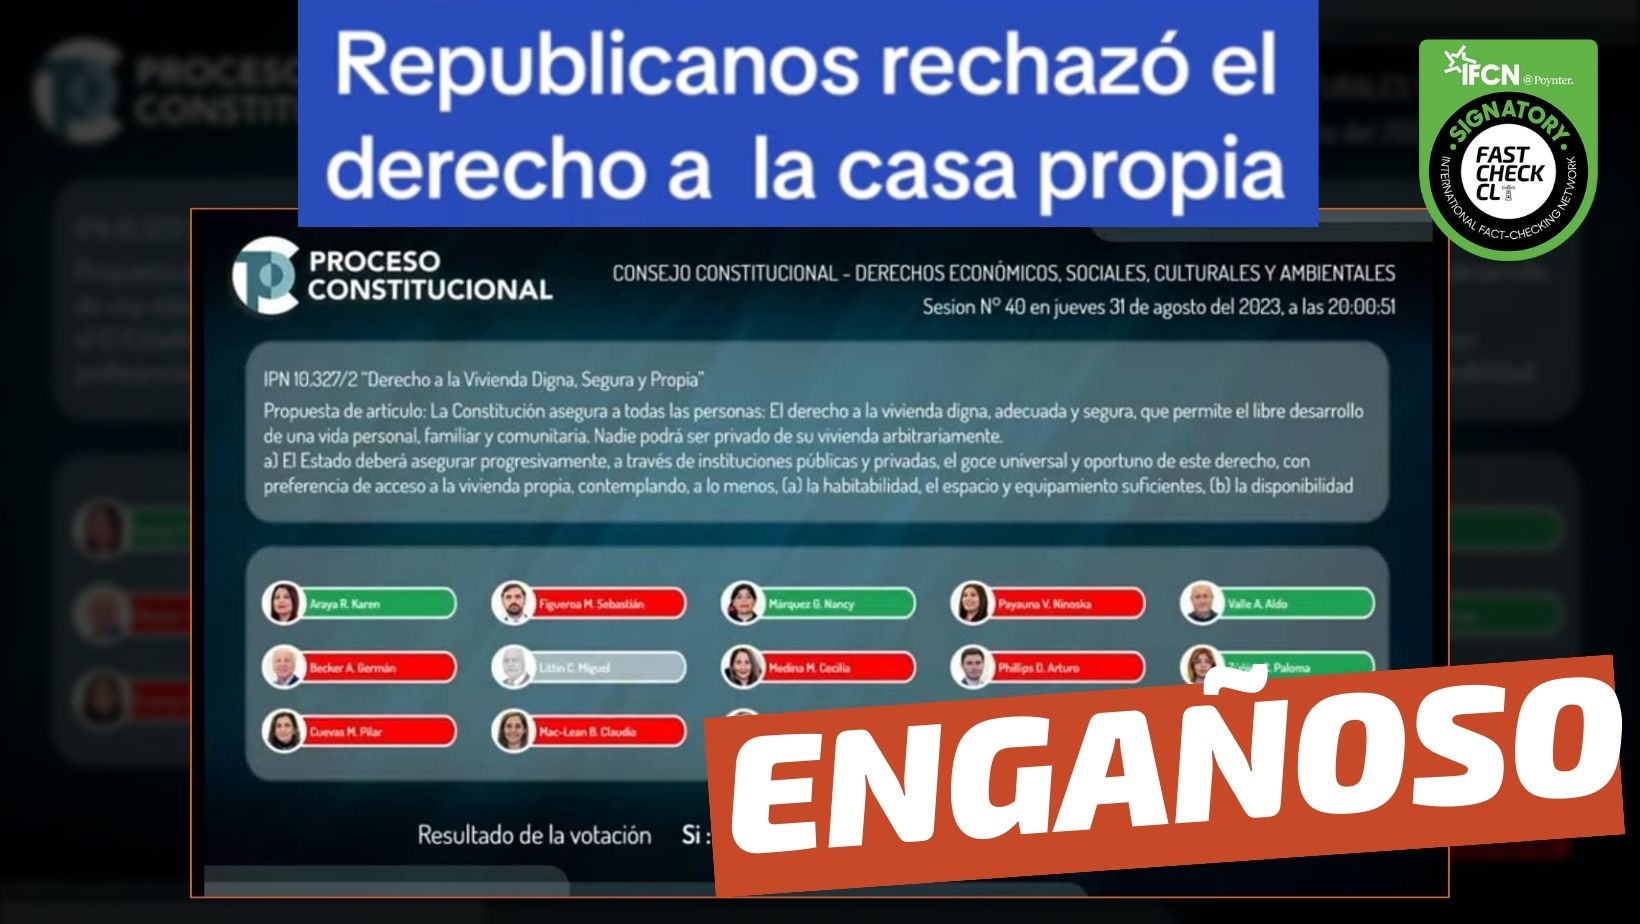 You are currently viewing (Imagen) “Republicanos rechazó el derecho a la casa propia”: #Engañoso